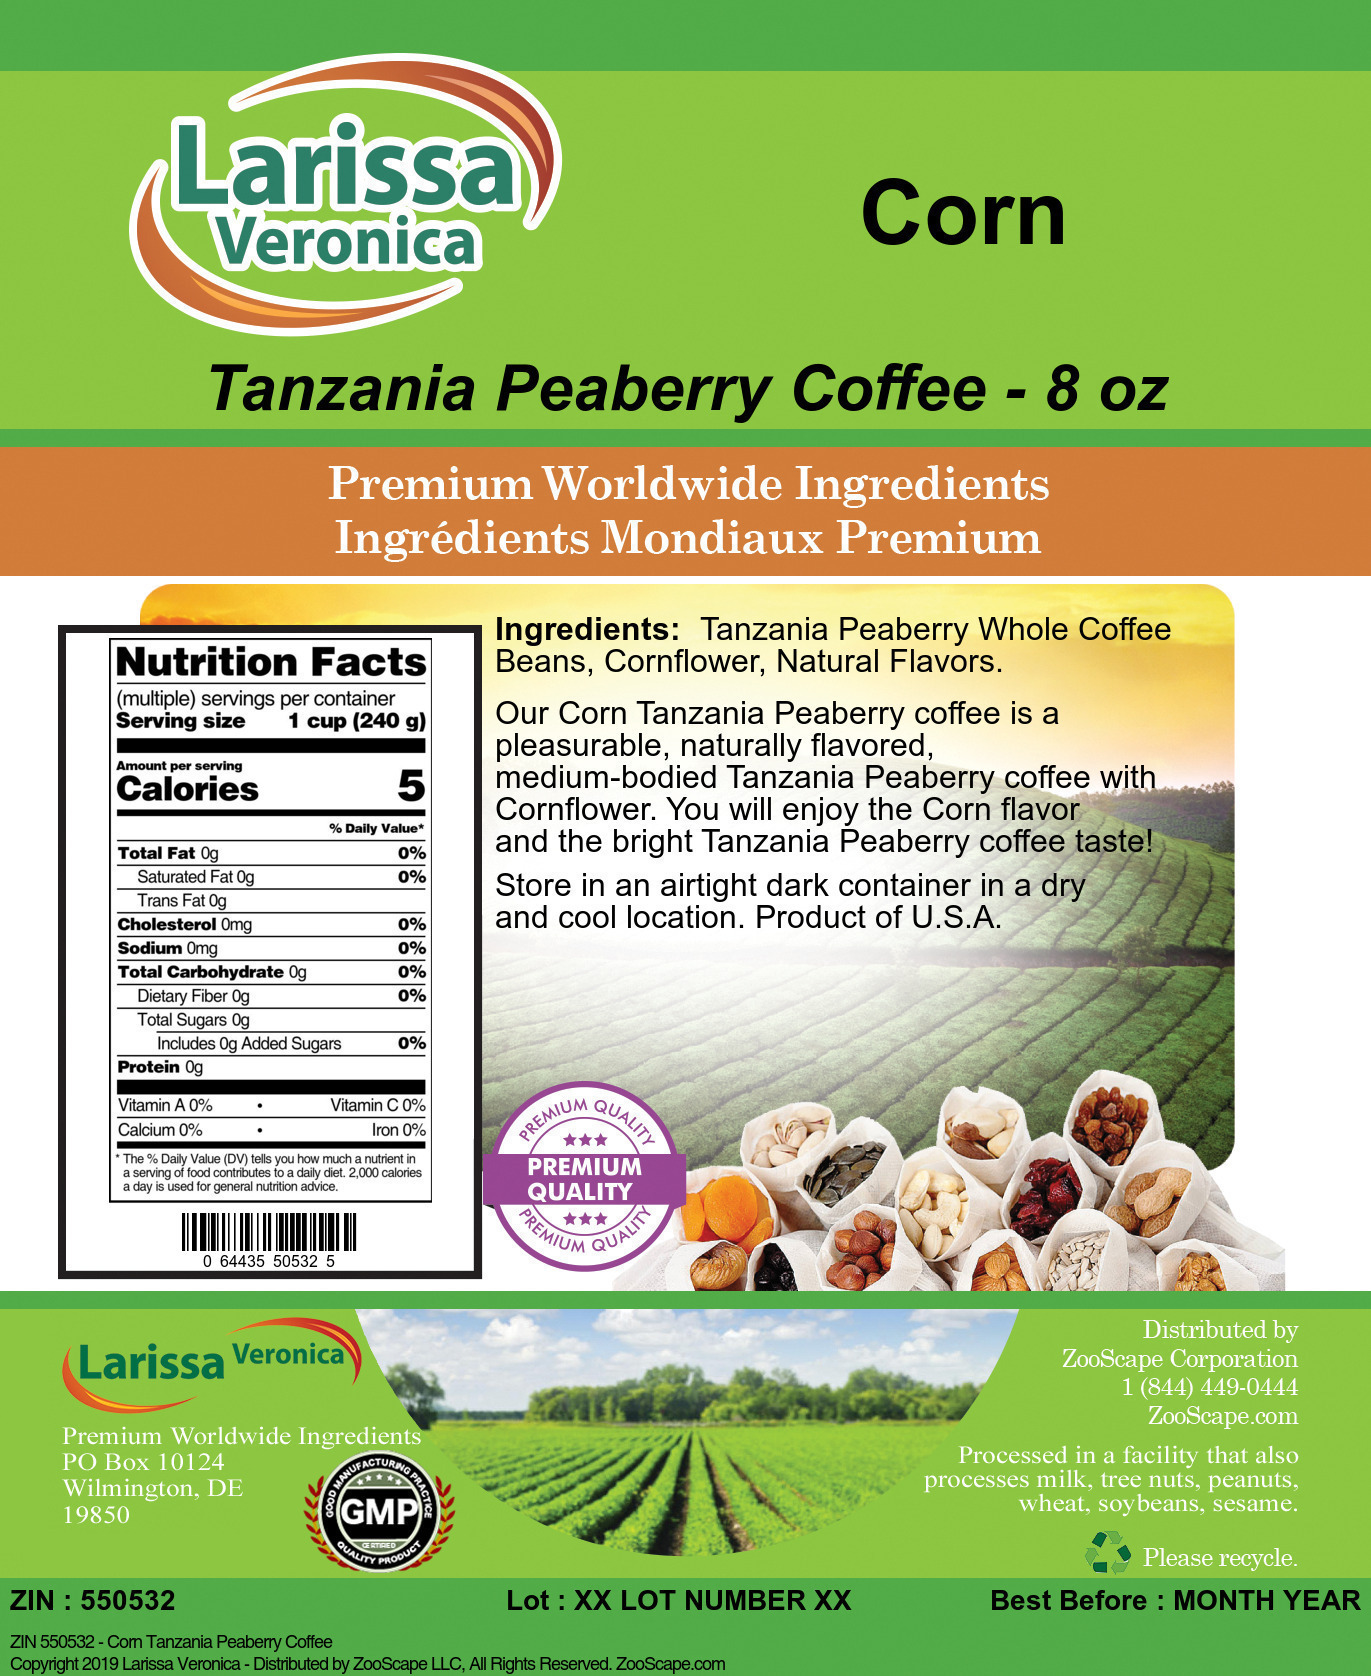 Corn Tanzania Peaberry Coffee - Label